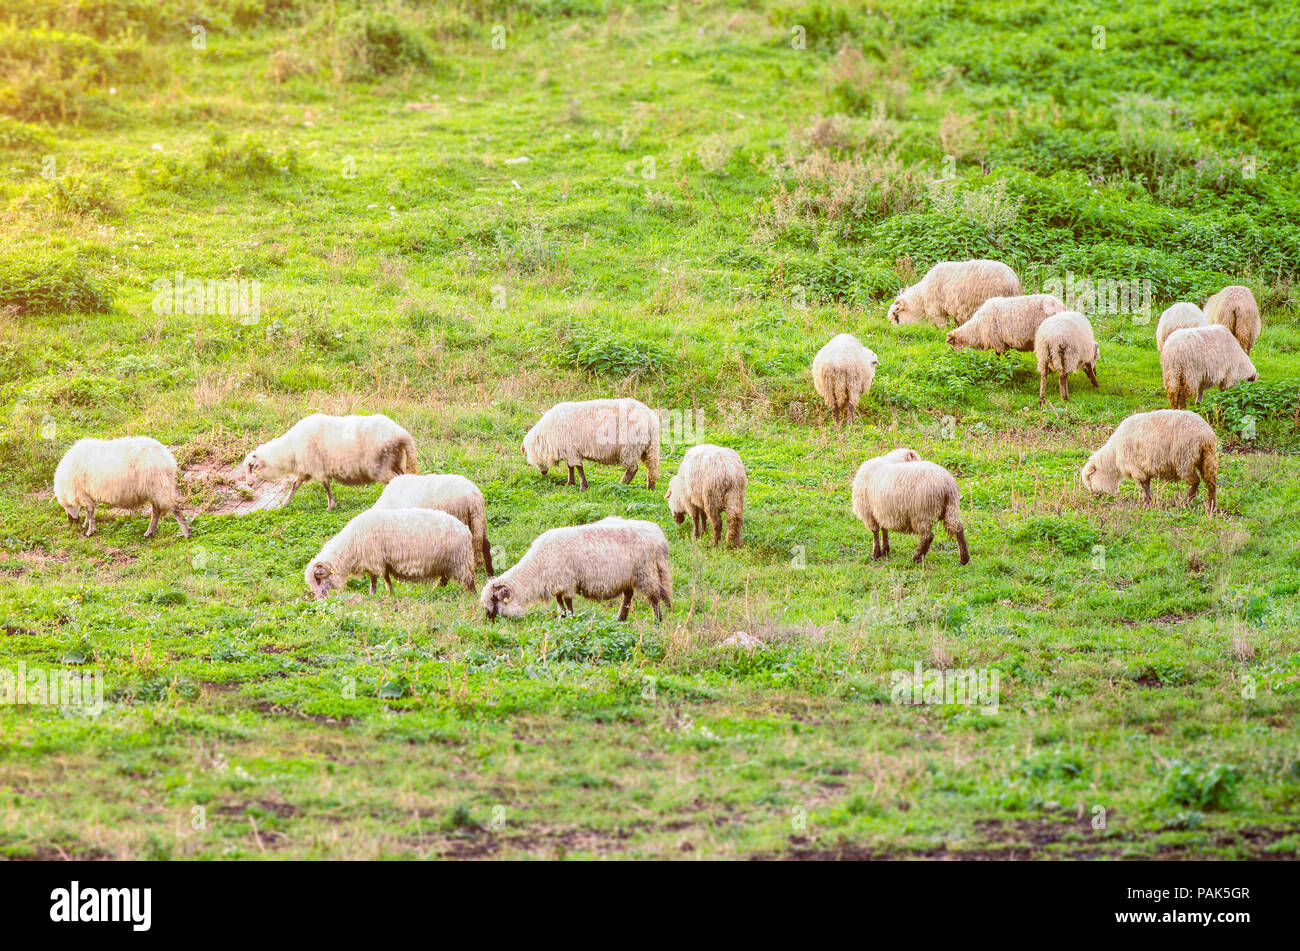 Rebaño de ovejas en un pasto verde wuggesting animales de granja de cultivo ecológico con la luz del sol suave aplica filtros y efectos Foto de stock